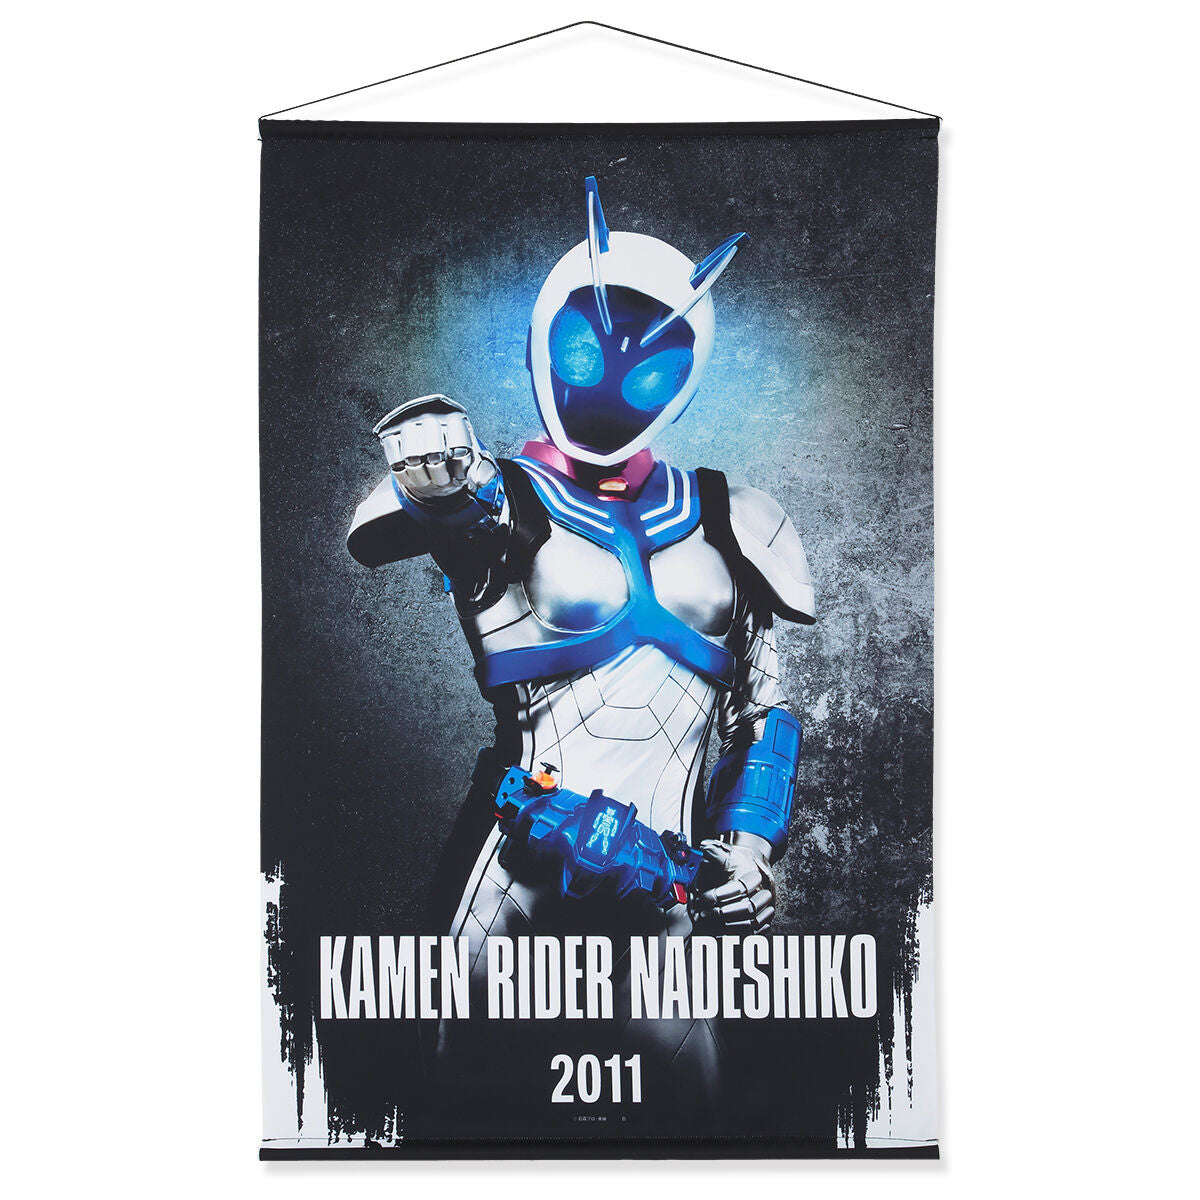 Kamen Rider Fourze Tapestries